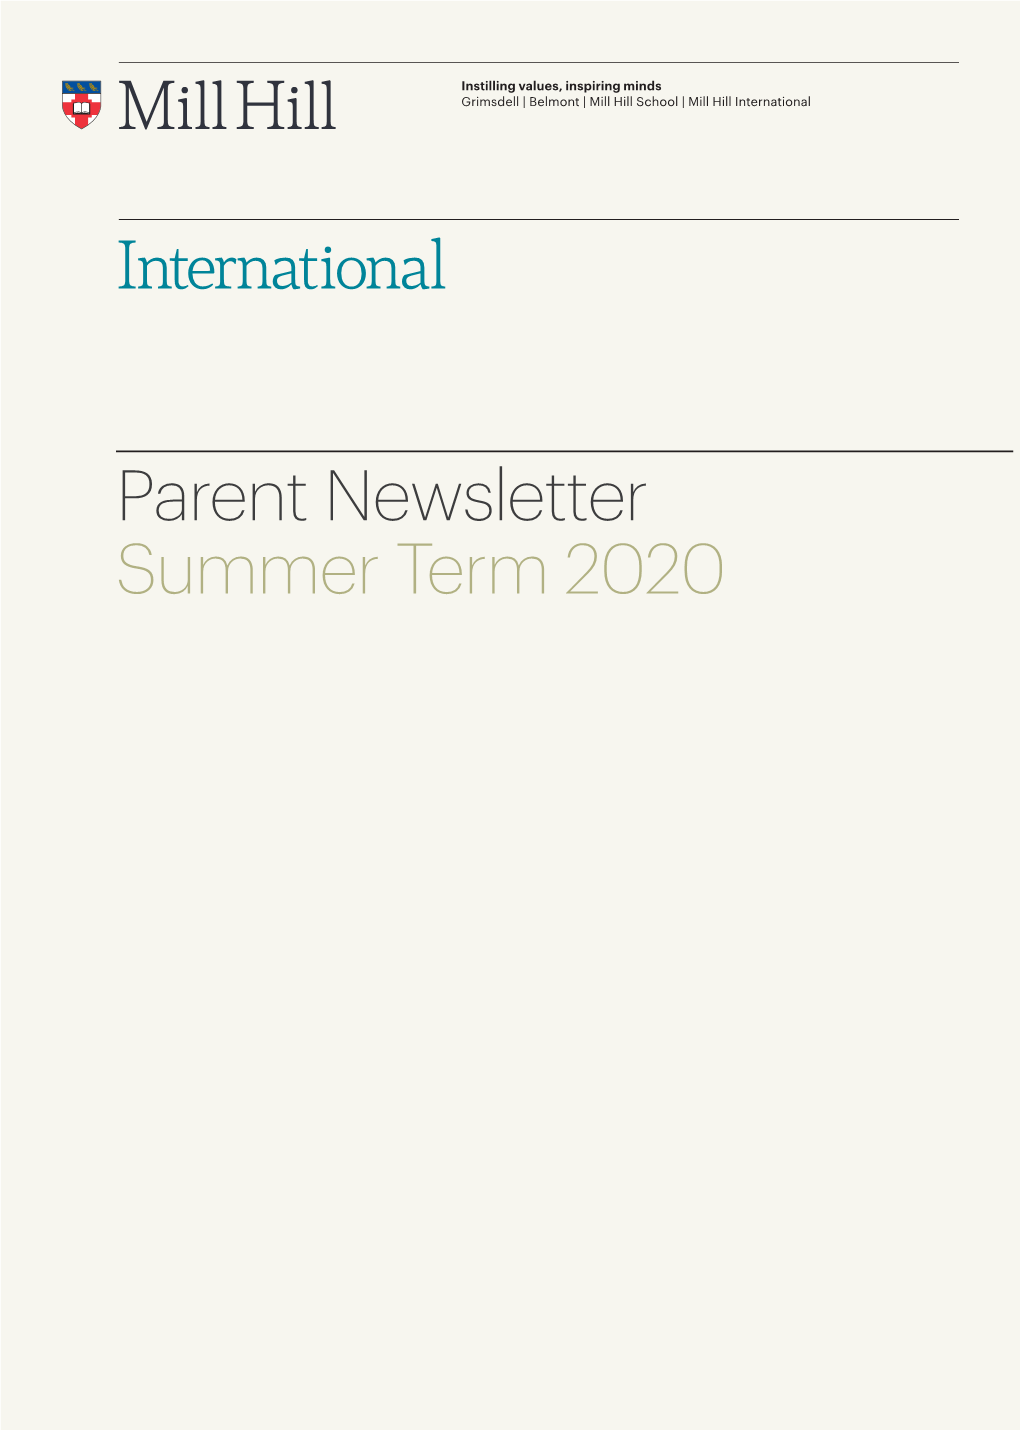 Parent Newsletter Summer Term 2020